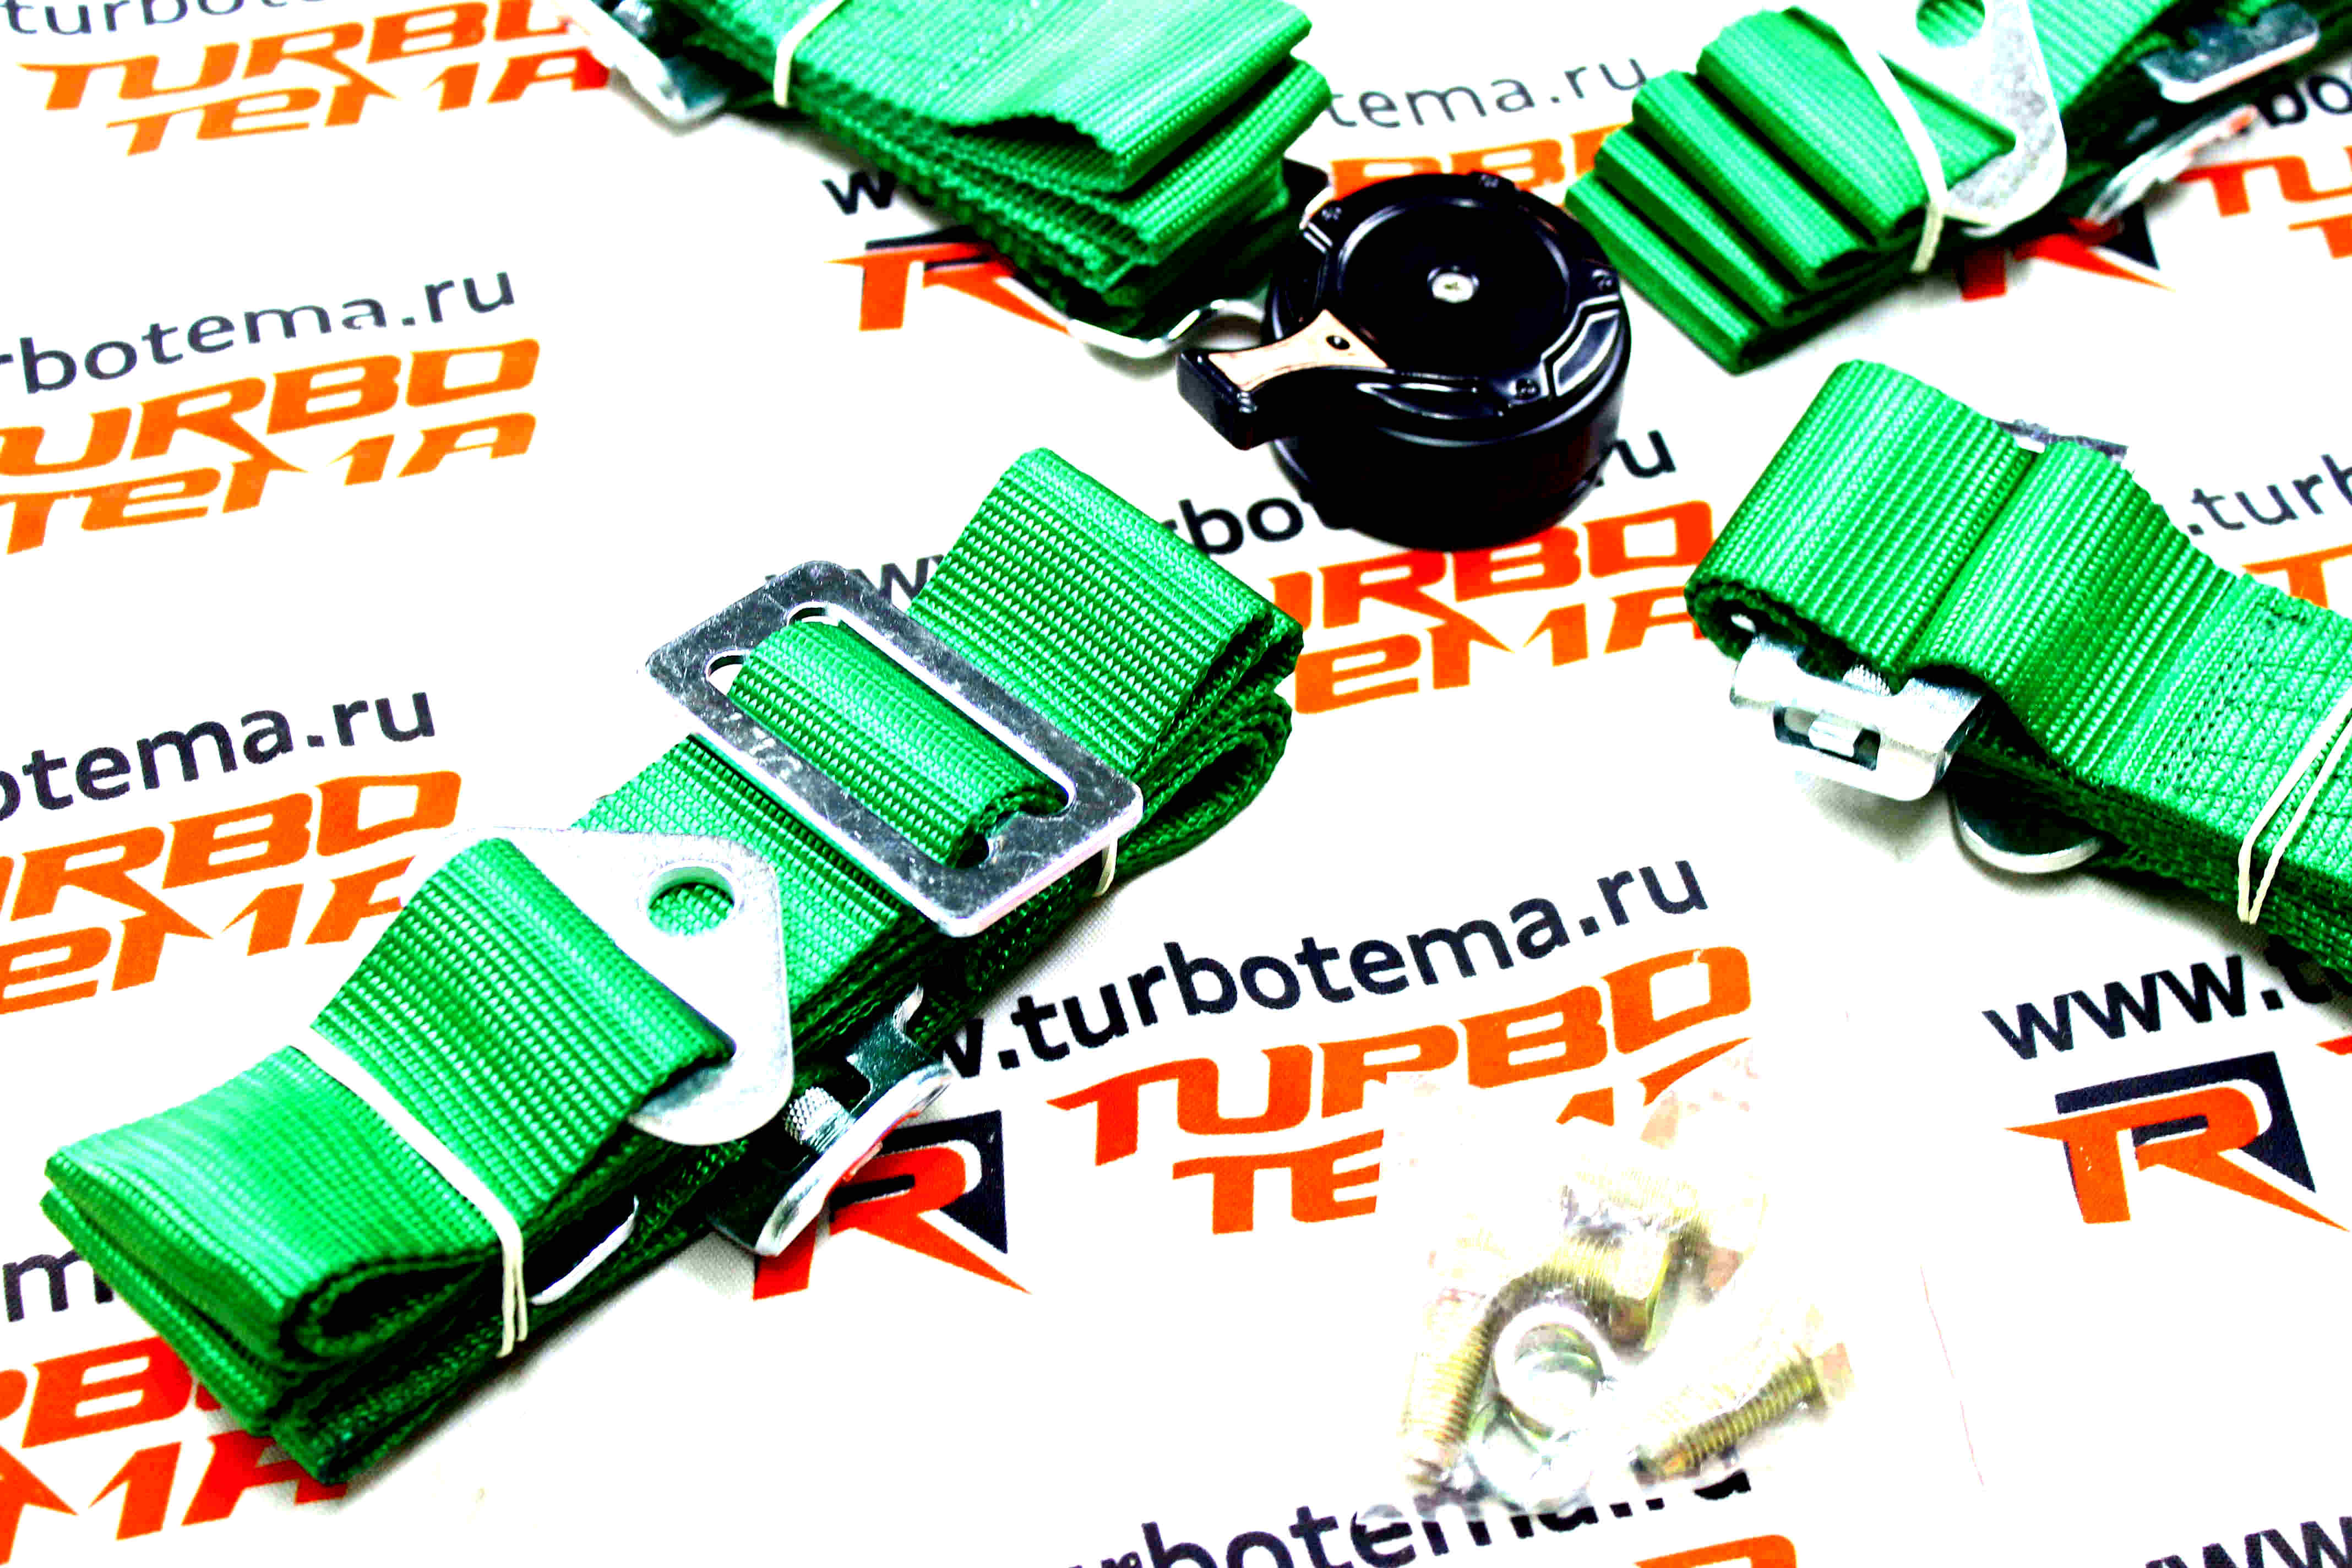 Ремни безопасности "TURBOTEMA" 4-х точечные, 2" ширина, быстросъемные (зеленые) JBR4001-4. Фото �4